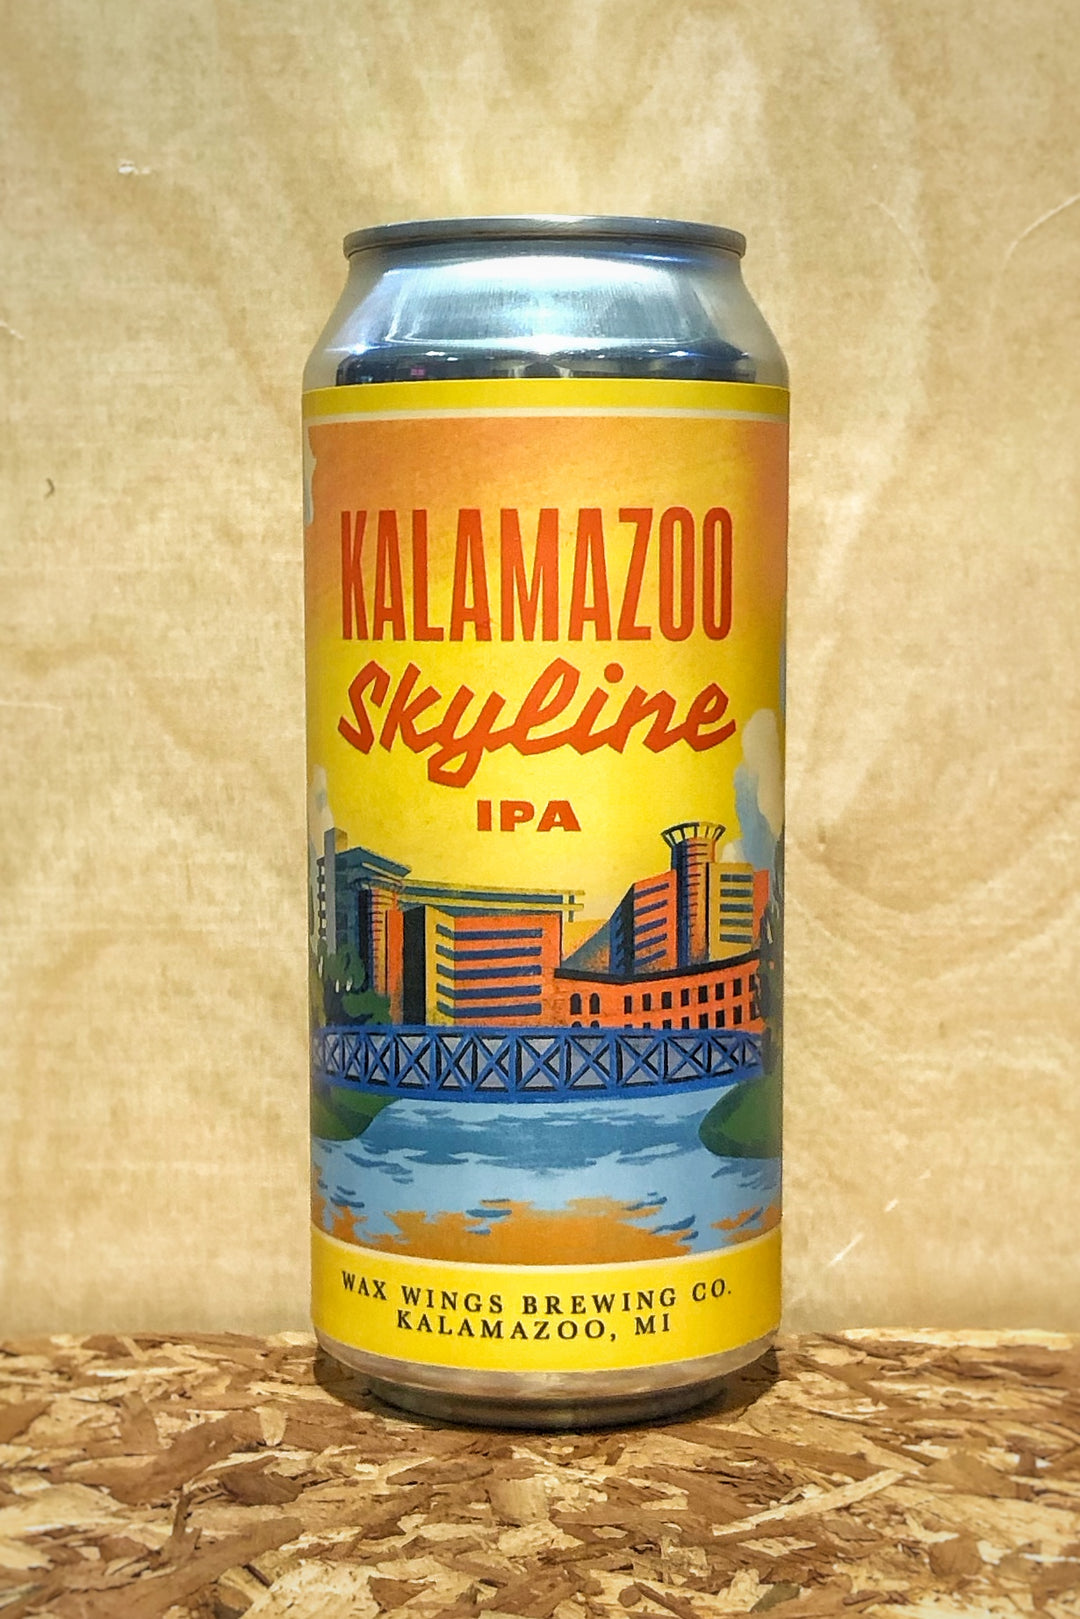 Wax Wings Brewing Co. 'Kalamazoo Skyline' IPA (Kalamazoo, MI)